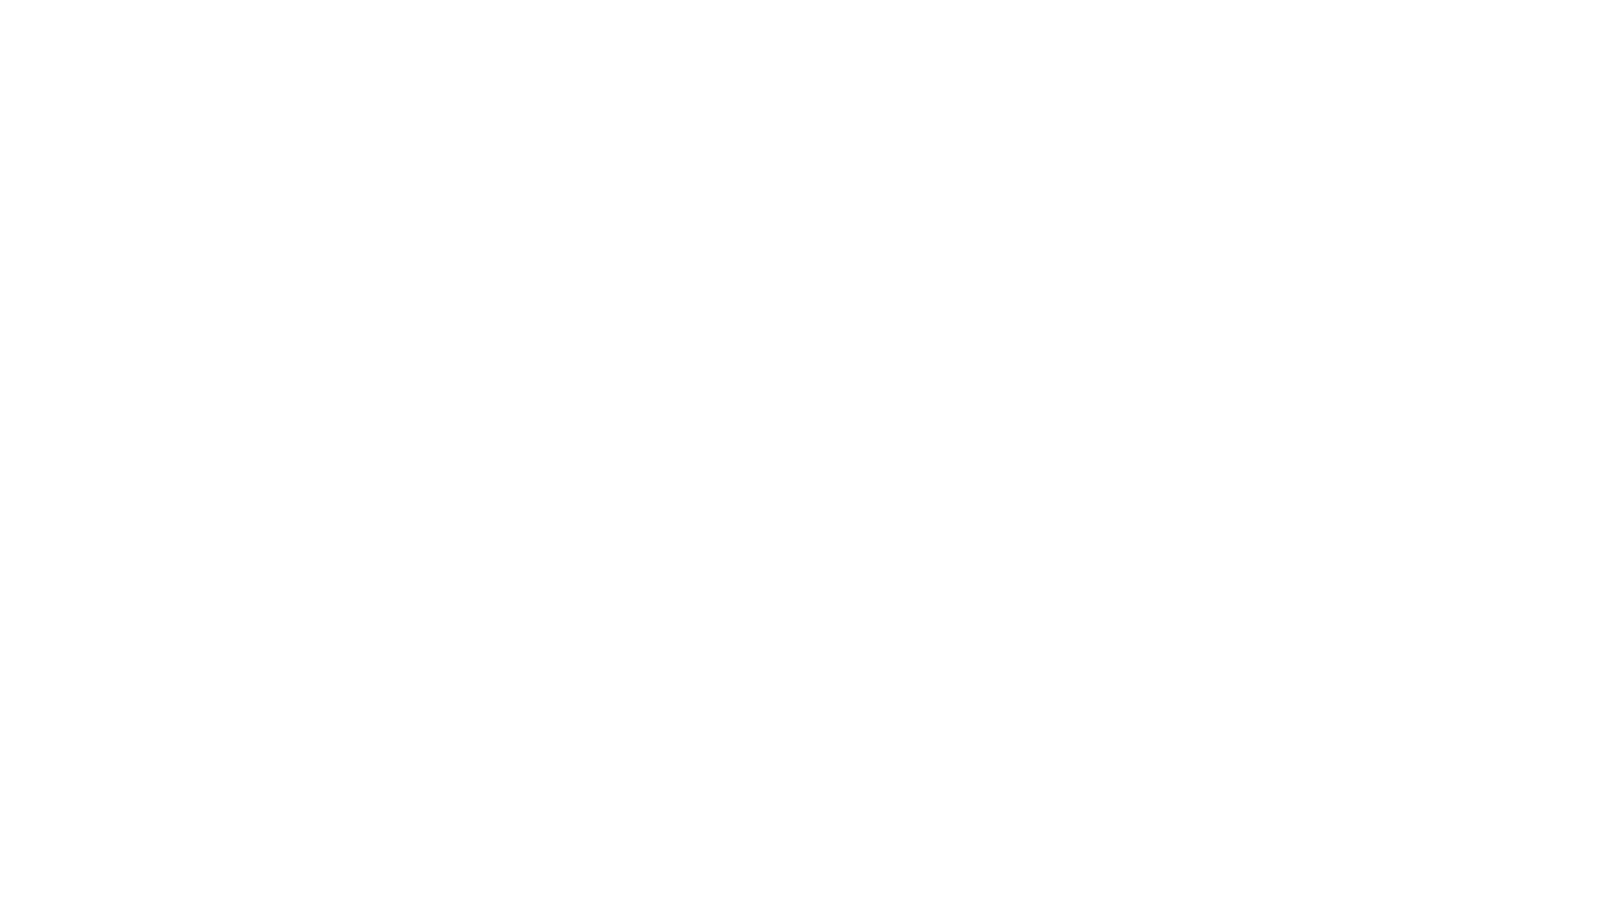 ২০২৩ সালের নতুন কিছু ল্যাপটপ মডেল দেখে নিন 💯 চলছে ধামাকা ডিস্কাউন্ট অফার | 
➤ কুরিয়ার সার্ভিসের মাধ্যমে বাংলাদেশের যেকোনো জেলায় প্রোডাক্ট ডেলিভারী দেওয়া হয়.
➡️প্রডাক্ট সম্পর্কিত বিস্তারিত তথ্য ও স্পেশাল ডিস্কাউন্ট পেতে কল- করুন। সরাসরি দেখতে চলে আসুন আমাদের শো-রুমে। সেরা সব ল্যাপটপের কালেকশন থেকে বেছে নিন আপনারটি ! 
➤ অর্ডার করতে আমাদের সাথে যোগাযোগ করুন:
☎️ +𝟾𝟾0𝟷𝟺0𝟸-𝟷𝟹𝟾𝟷𝟻0 - 𝙽𝚊𝚣𝚖𝚞𝚕 𝙷𝚊𝚜𝚊𝚗 ( 𝚂𝚊𝚕𝚎𝚜 & 𝚂𝚞𝚙𝚙𝚘𝚛𝚝) 𝚆𝚑𝚊𝚝'𝚜  𝙰𝚙𝚙.   
☎️ +𝟾𝟾0𝟷𝟿𝟽0𝟷𝟹𝟾𝟷𝟻0 - 𝙼𝚛. 𝚁𝚒𝚗𝚔𝚞 (sales & 𝚂𝚞𝚙𝚙𝚘𝚛𝚝) 𝚆𝚑𝚊𝚝'𝚜 𝚊𝚙𝚙. 
☎️ +𝟾𝟾0 𝟷𝟼𝟺𝟹-𝟸𝟾𝟽𝟾𝟿𝟻 -𝙰𝚜𝚑𝚒𝚔 𝙸𝚚𝚋𝚊𝚕 ( 𝙲𝙴𝙾) 𝚆𝚑𝚊𝚝'𝚜 𝚊𝚙𝚙.  
☎️ +𝟾𝟾0𝟷𝟿𝟽0𝟷𝟹𝟾𝟷𝟻𝟻 - 𝙼𝚛 𝙺𝚊𝚓𝚘𝚕 (𝚂𝚊𝚕𝚎𝚜 & 𝚂𝚞𝚙𝚙𝚘𝚛𝚝)𝚆𝚑𝚊𝚝'𝚜 𝚊𝚙𝚙.  
➤ 𝐎𝐮𝐫 𝐒𝐡𝐨𝐰 𝐑𝐨𝐨𝐦 𝐀𝐝𝐝𝐫𝐞𝐬𝐬:
𝘼𝙧𝙤𝙯 𝙏𝙚𝙘𝙝𝙣𝙤𝙡𝙤𝙜𝙮 𝘽𝘿 (Multiplan Center Branch)
Shop: 573, 574 Level: 5, Multiplan Center, New Elephant Road, Dhaka
𝘼𝙧𝙤𝙯 𝙏𝙚𝙘𝙝𝙣𝙤𝙡𝙤𝙜𝙮 𝘽𝘿 (Alpona Plaza Branch)
Shop: 303 Level: 3, Alpona Plaza, New Elephant Road.
#hppavilion15 
#hppavilion14
#hppavilion13
#openbox